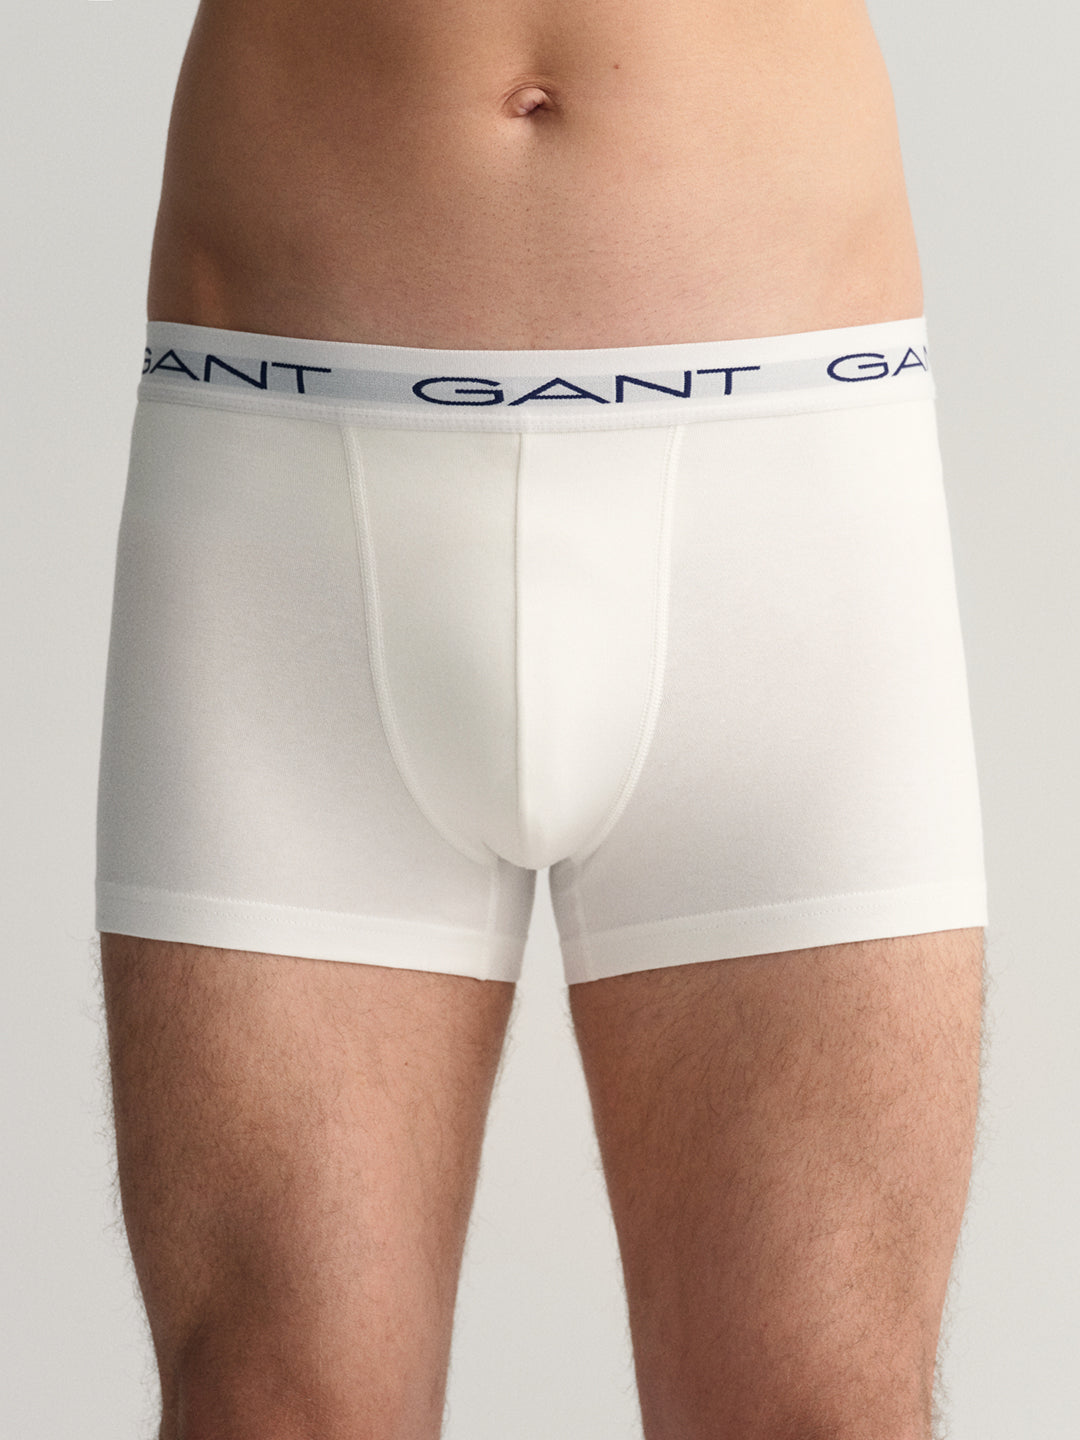 Gant Men Pack Of 3 Brand Logo Printed Trunks 8905241187102